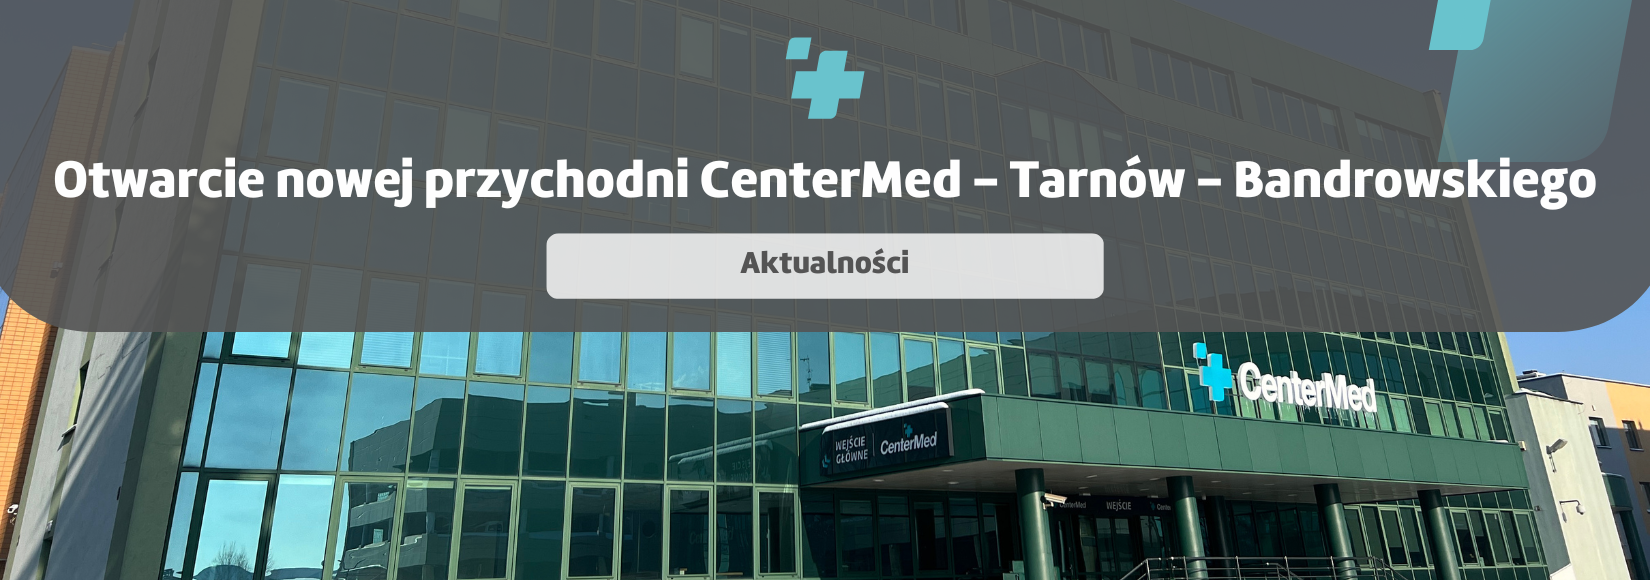 Otwarcie nowej przychodni CenterMed - Tarnów - Bandrowskiego